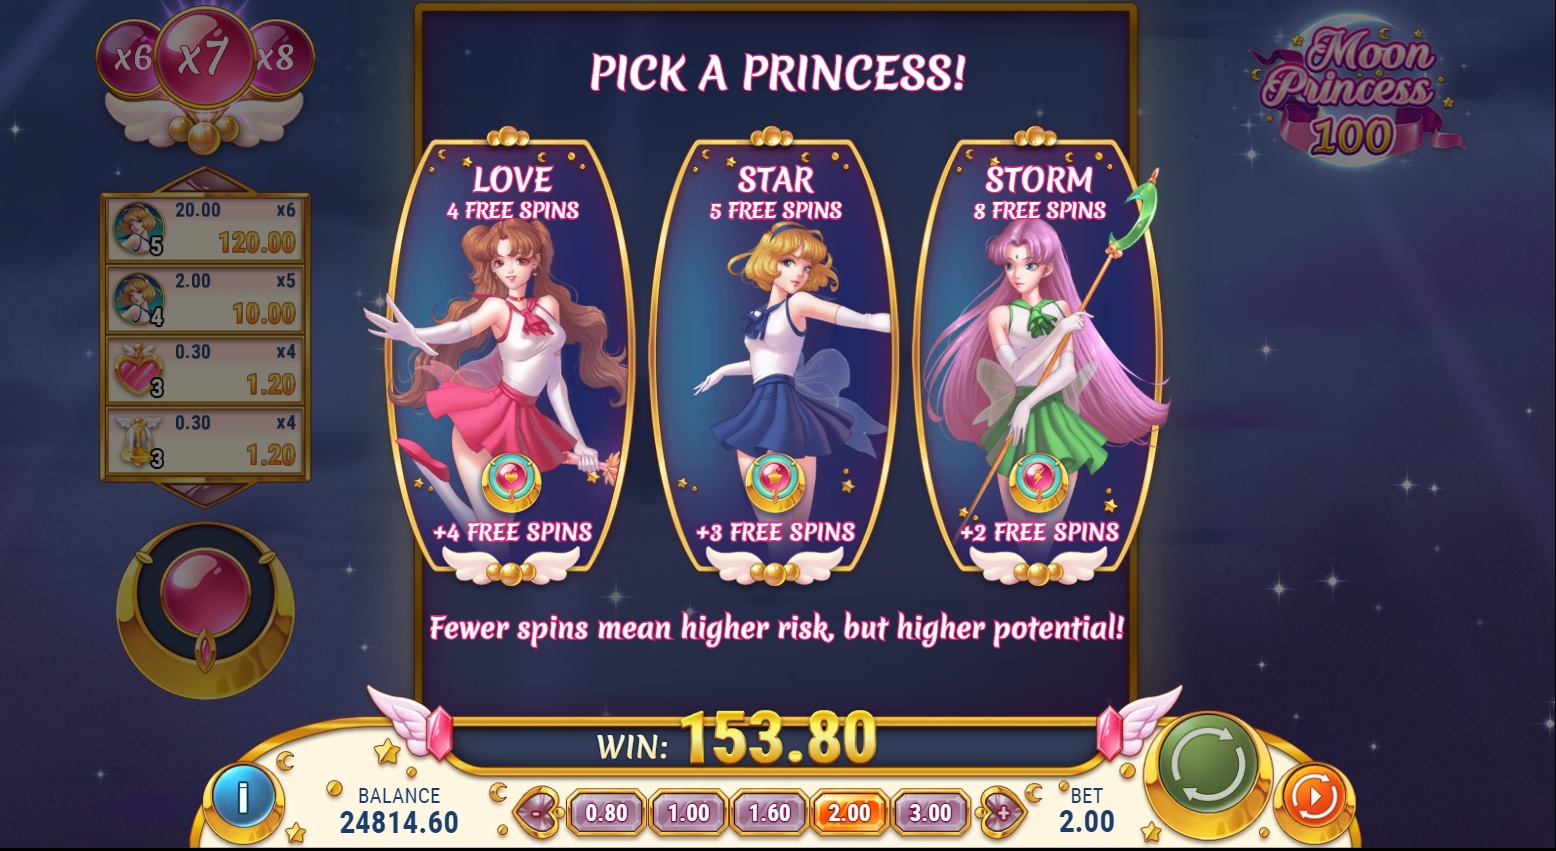 Moon Princess 100 slot, pick free spins